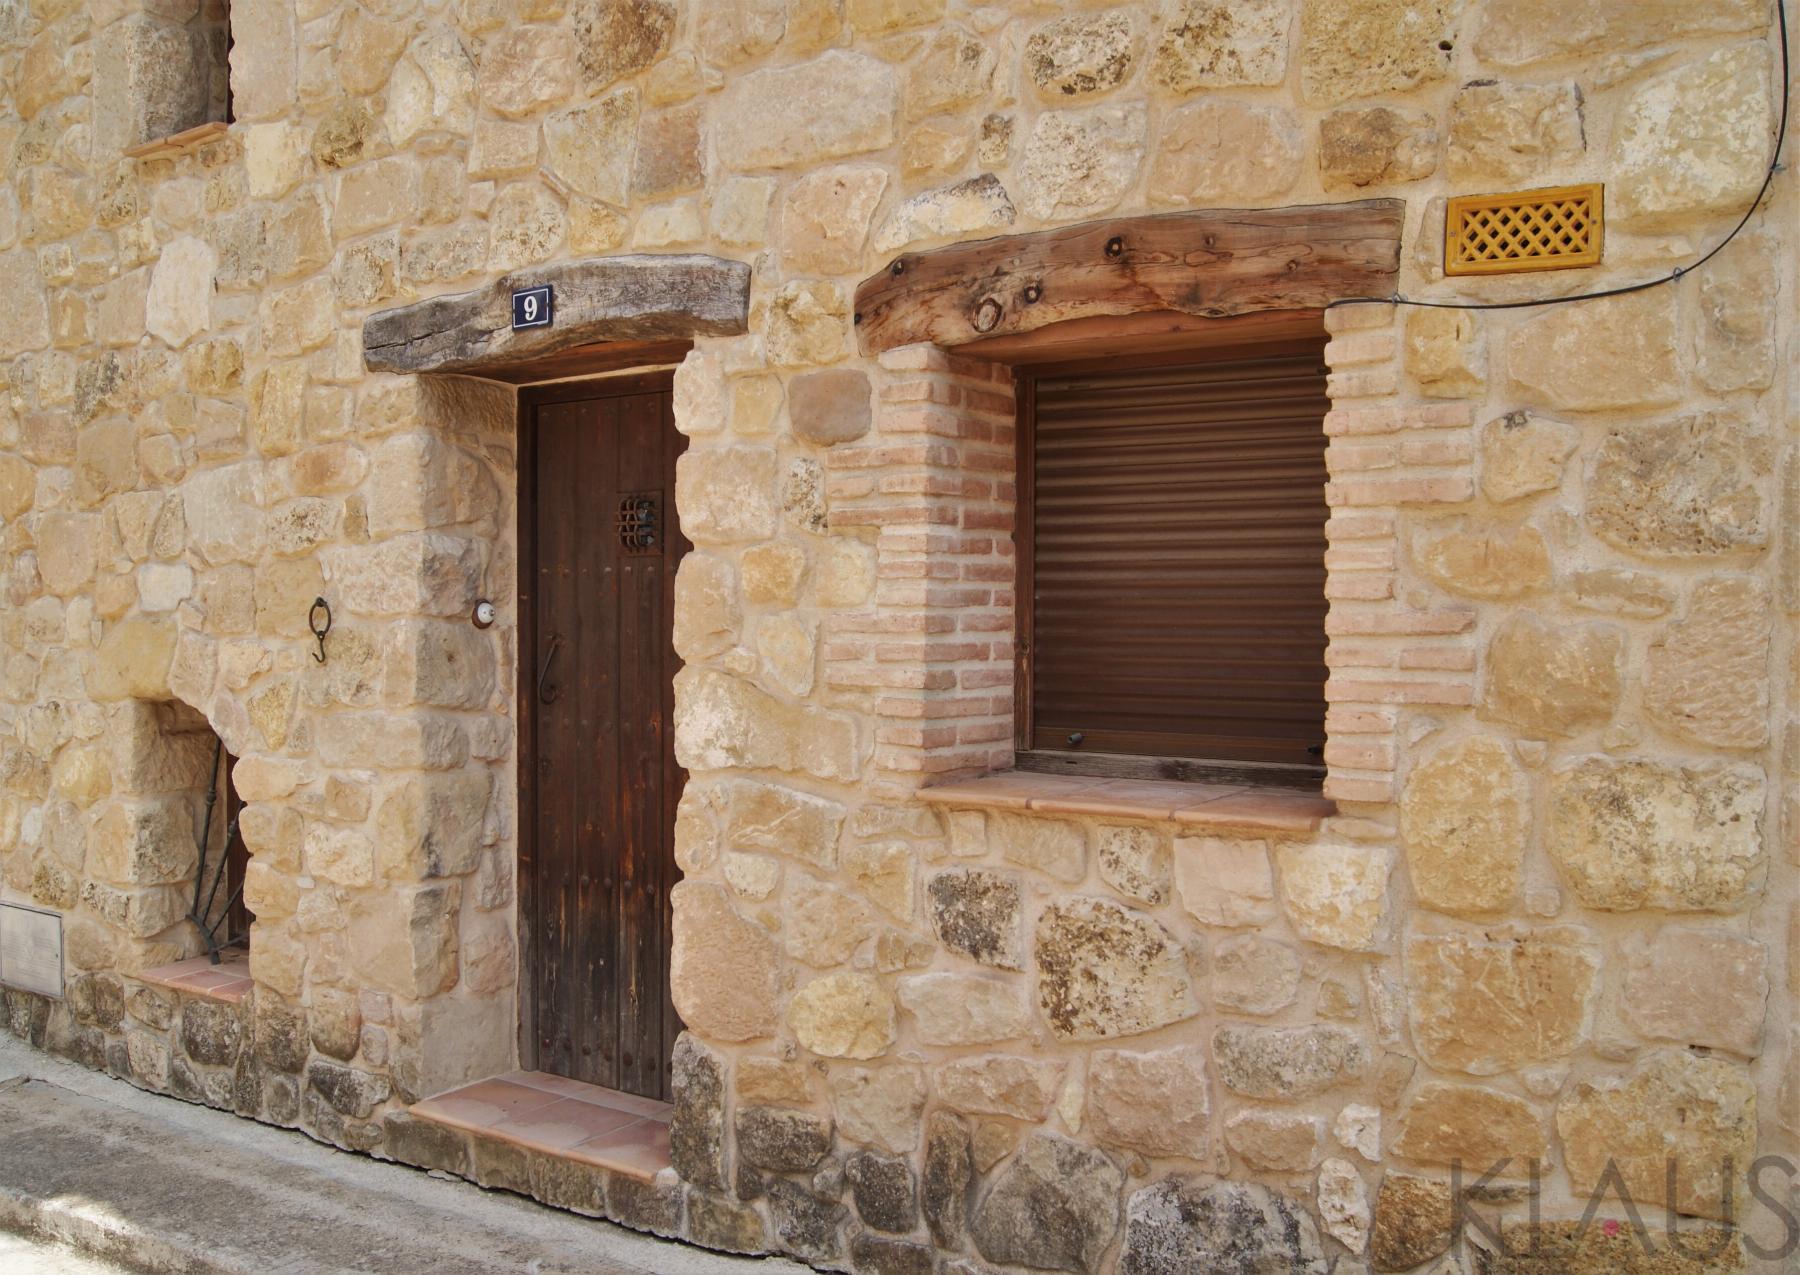 Verkoop van huis in Horta de Sant Joan